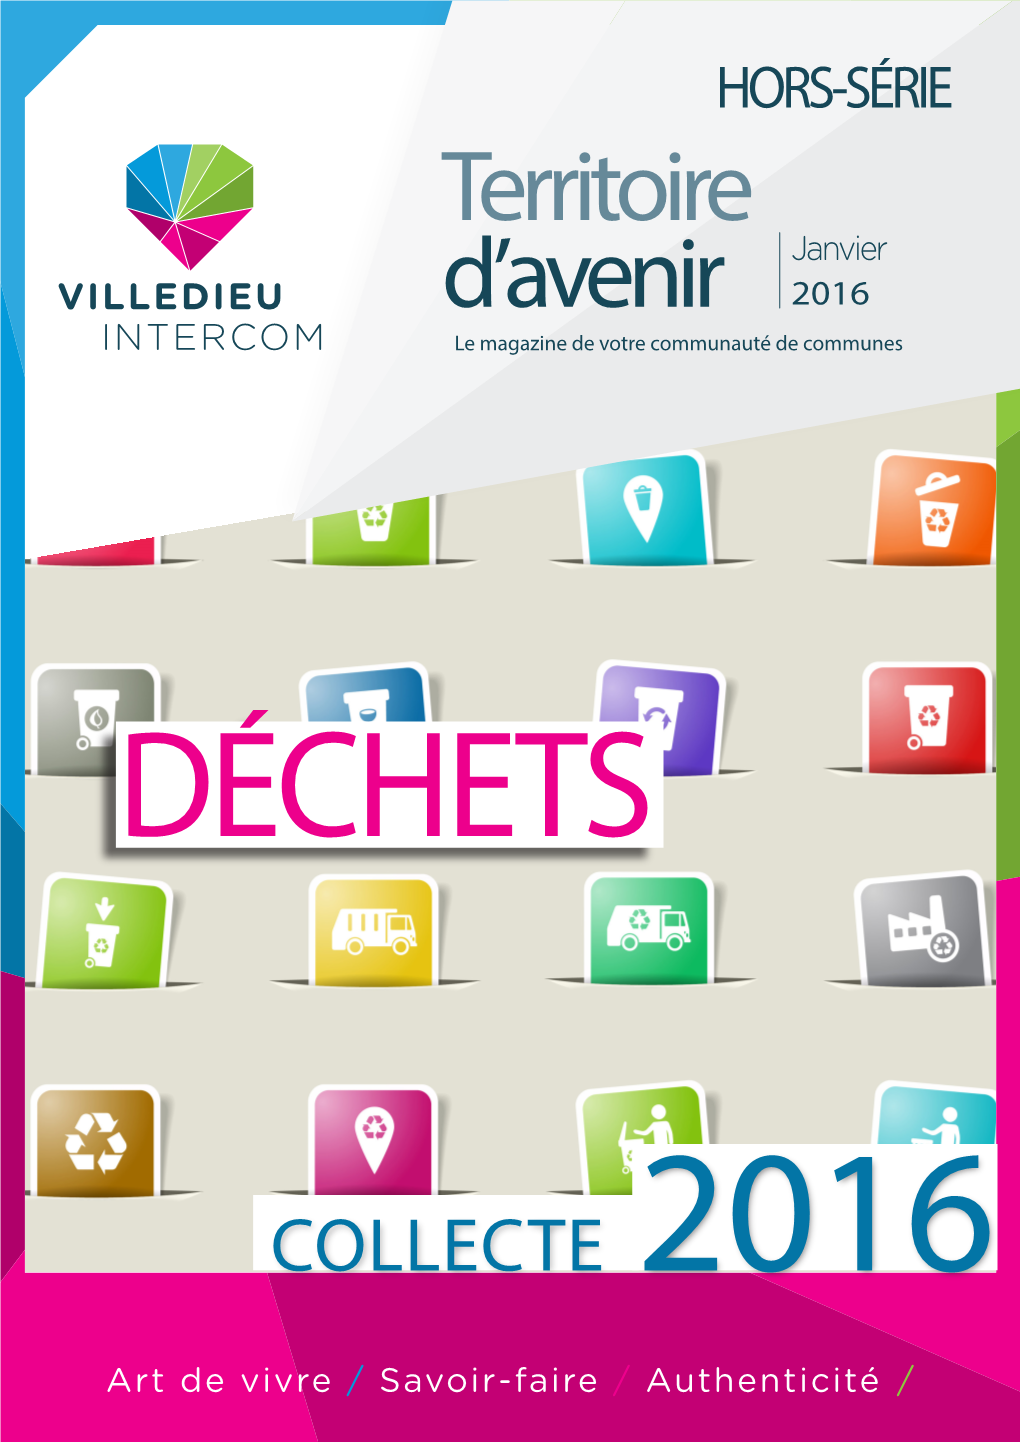 Villedieu Intercom Hors Serie Janvier 2016 Dechets.Pdf